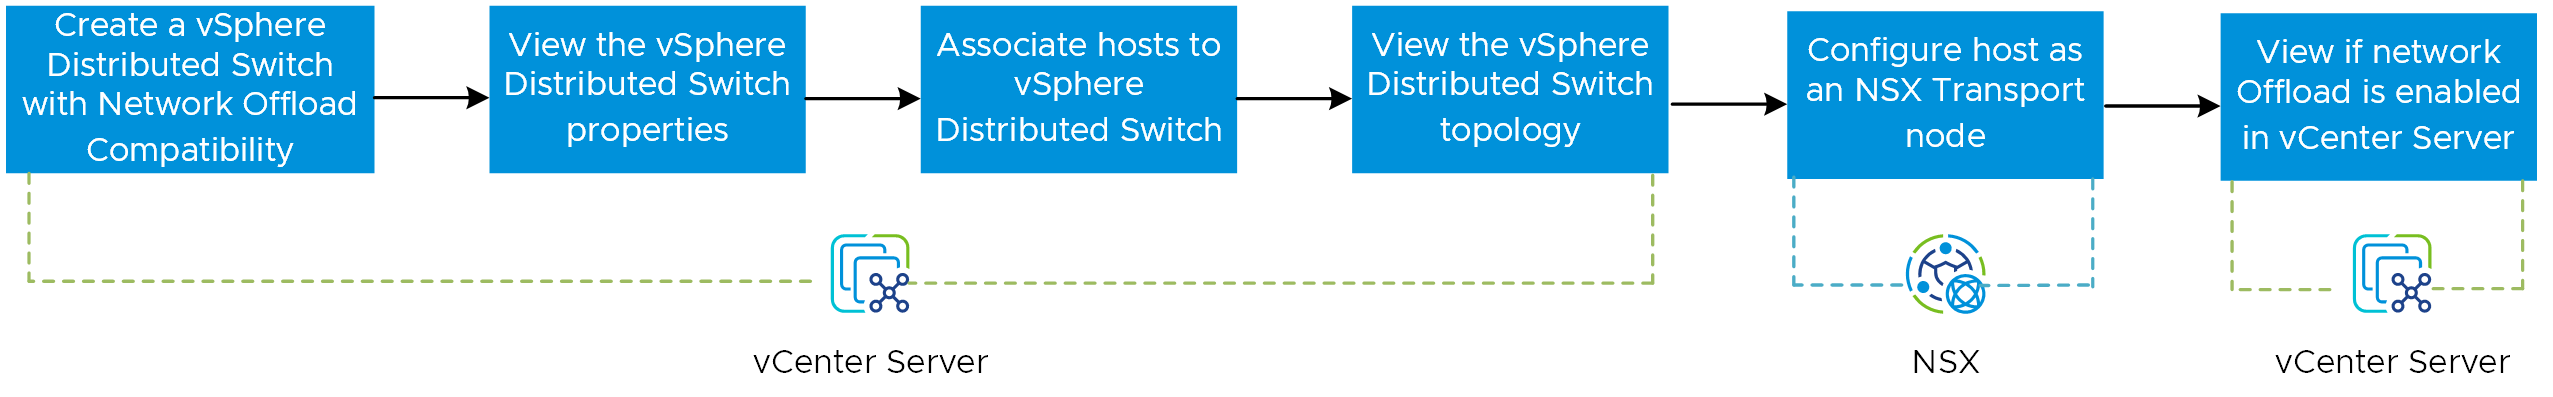 Auf dem Bild ist der Workflow zum Aktivieren der Netzwerkauslagerungsfunktion dargestellt